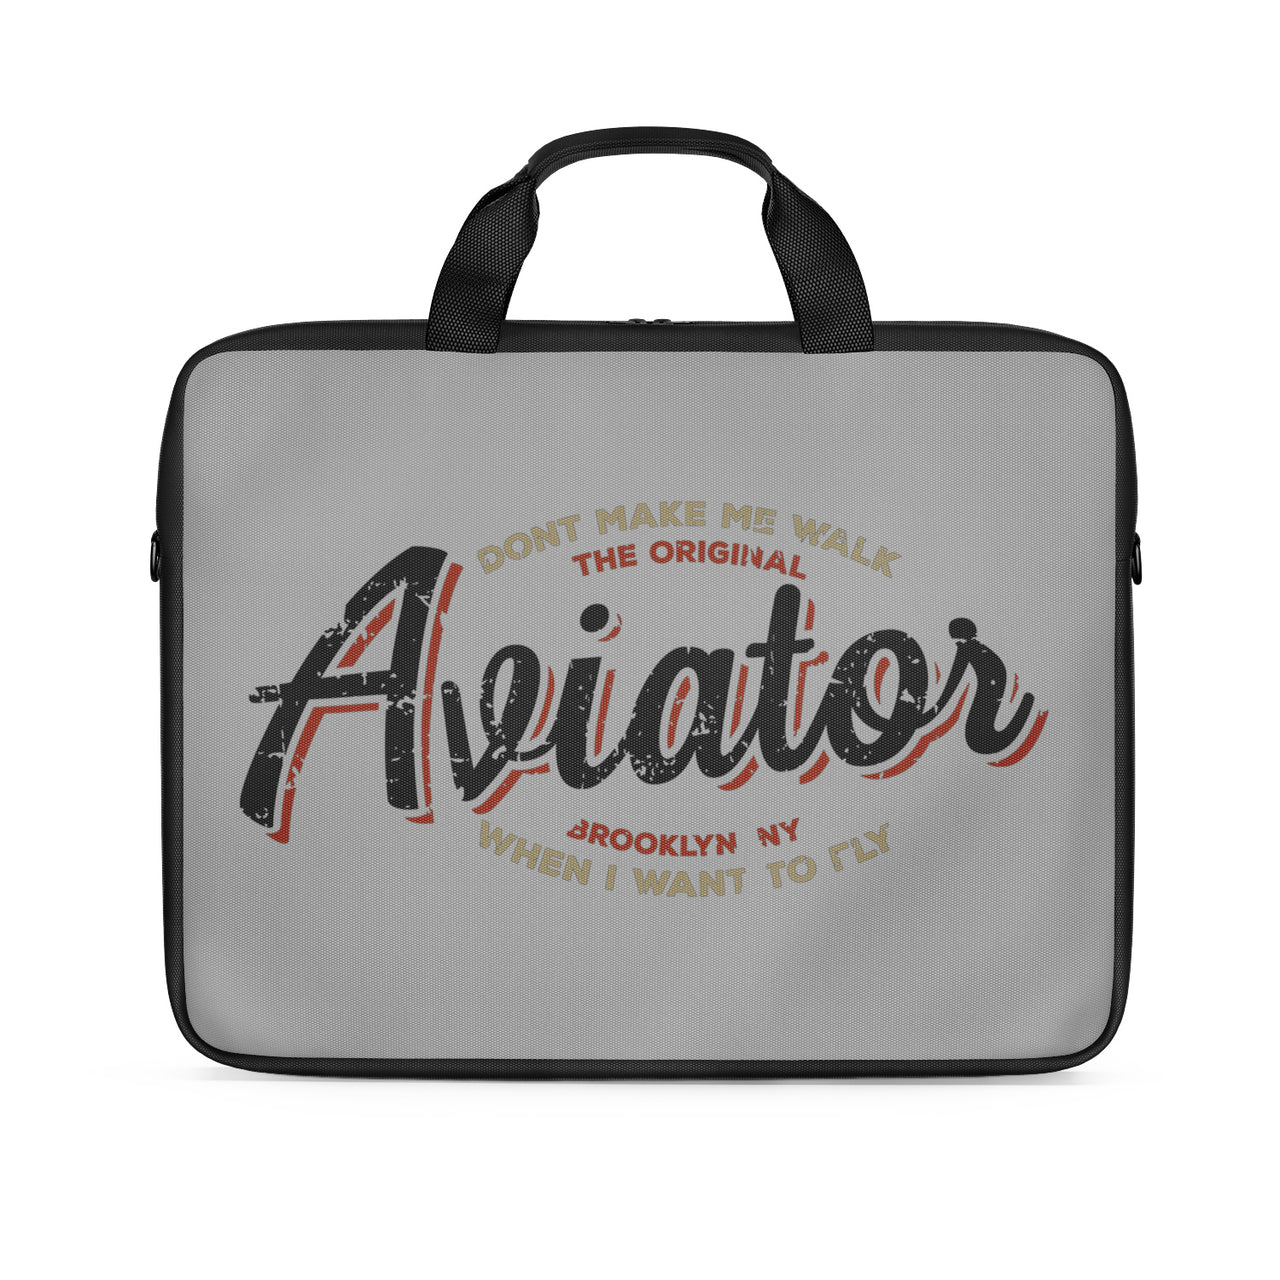 Aviator - Dont Make Me Walk Designed Laptop & Tablet Bags